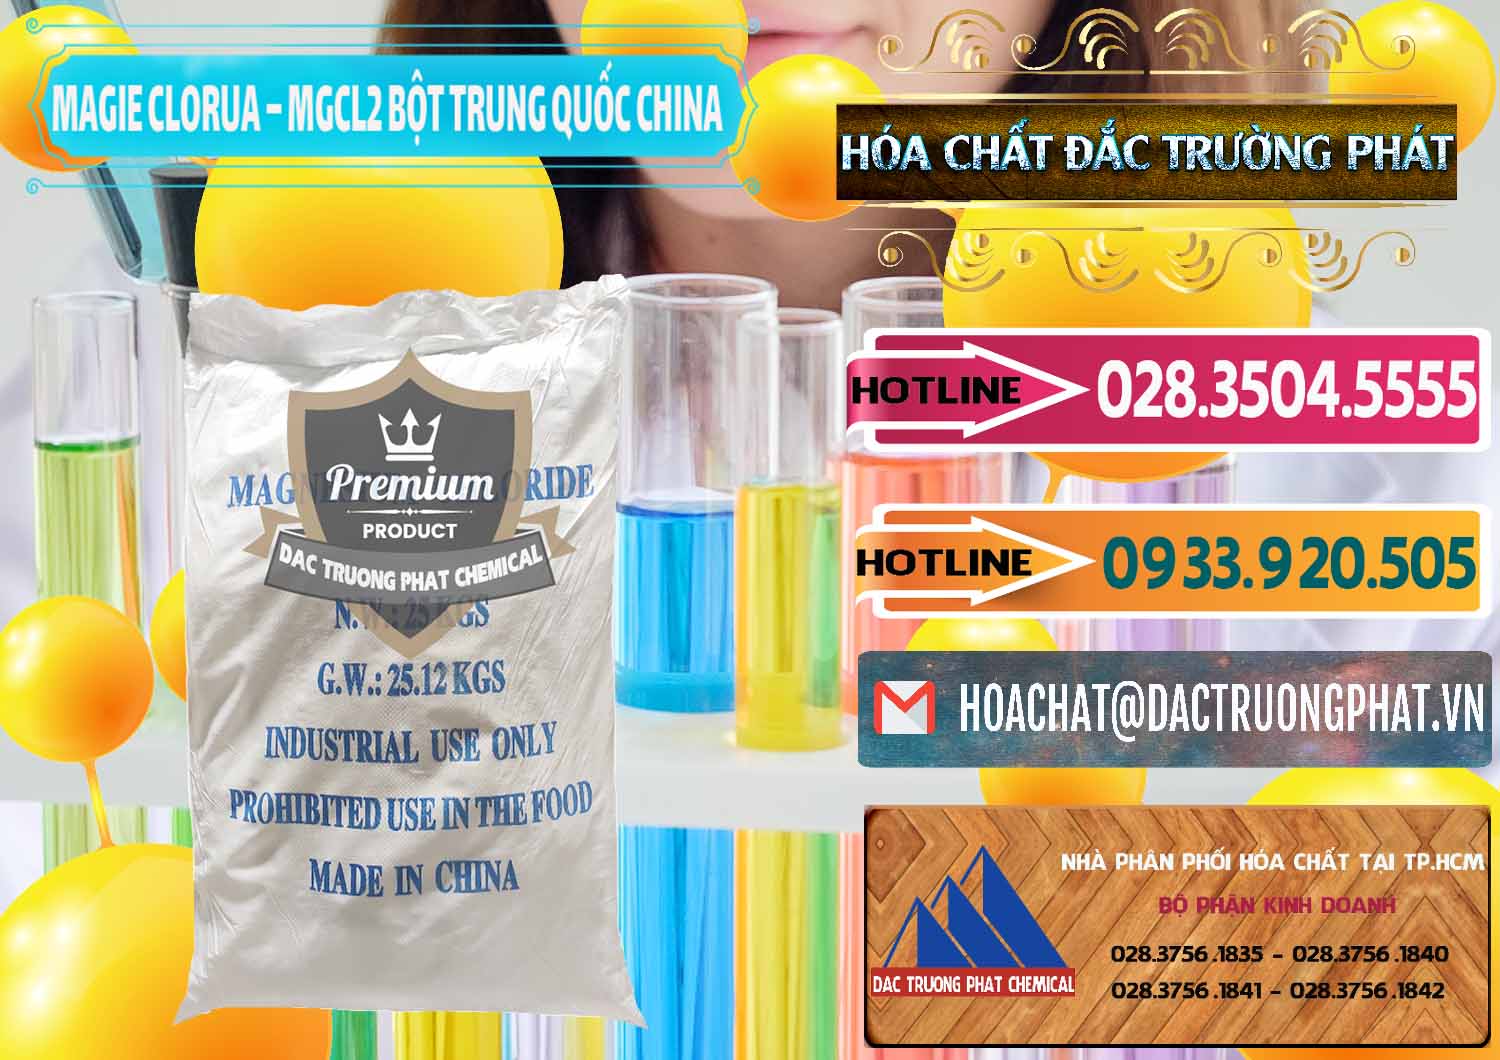 Nhà cung ứng và bán Magie Clorua – MGCL2 96% Dạng Bột Bao Chữ Xanh Trung Quốc China - 0207 - Bán ( phân phối ) hóa chất tại TP.HCM - dactruongphat.vn